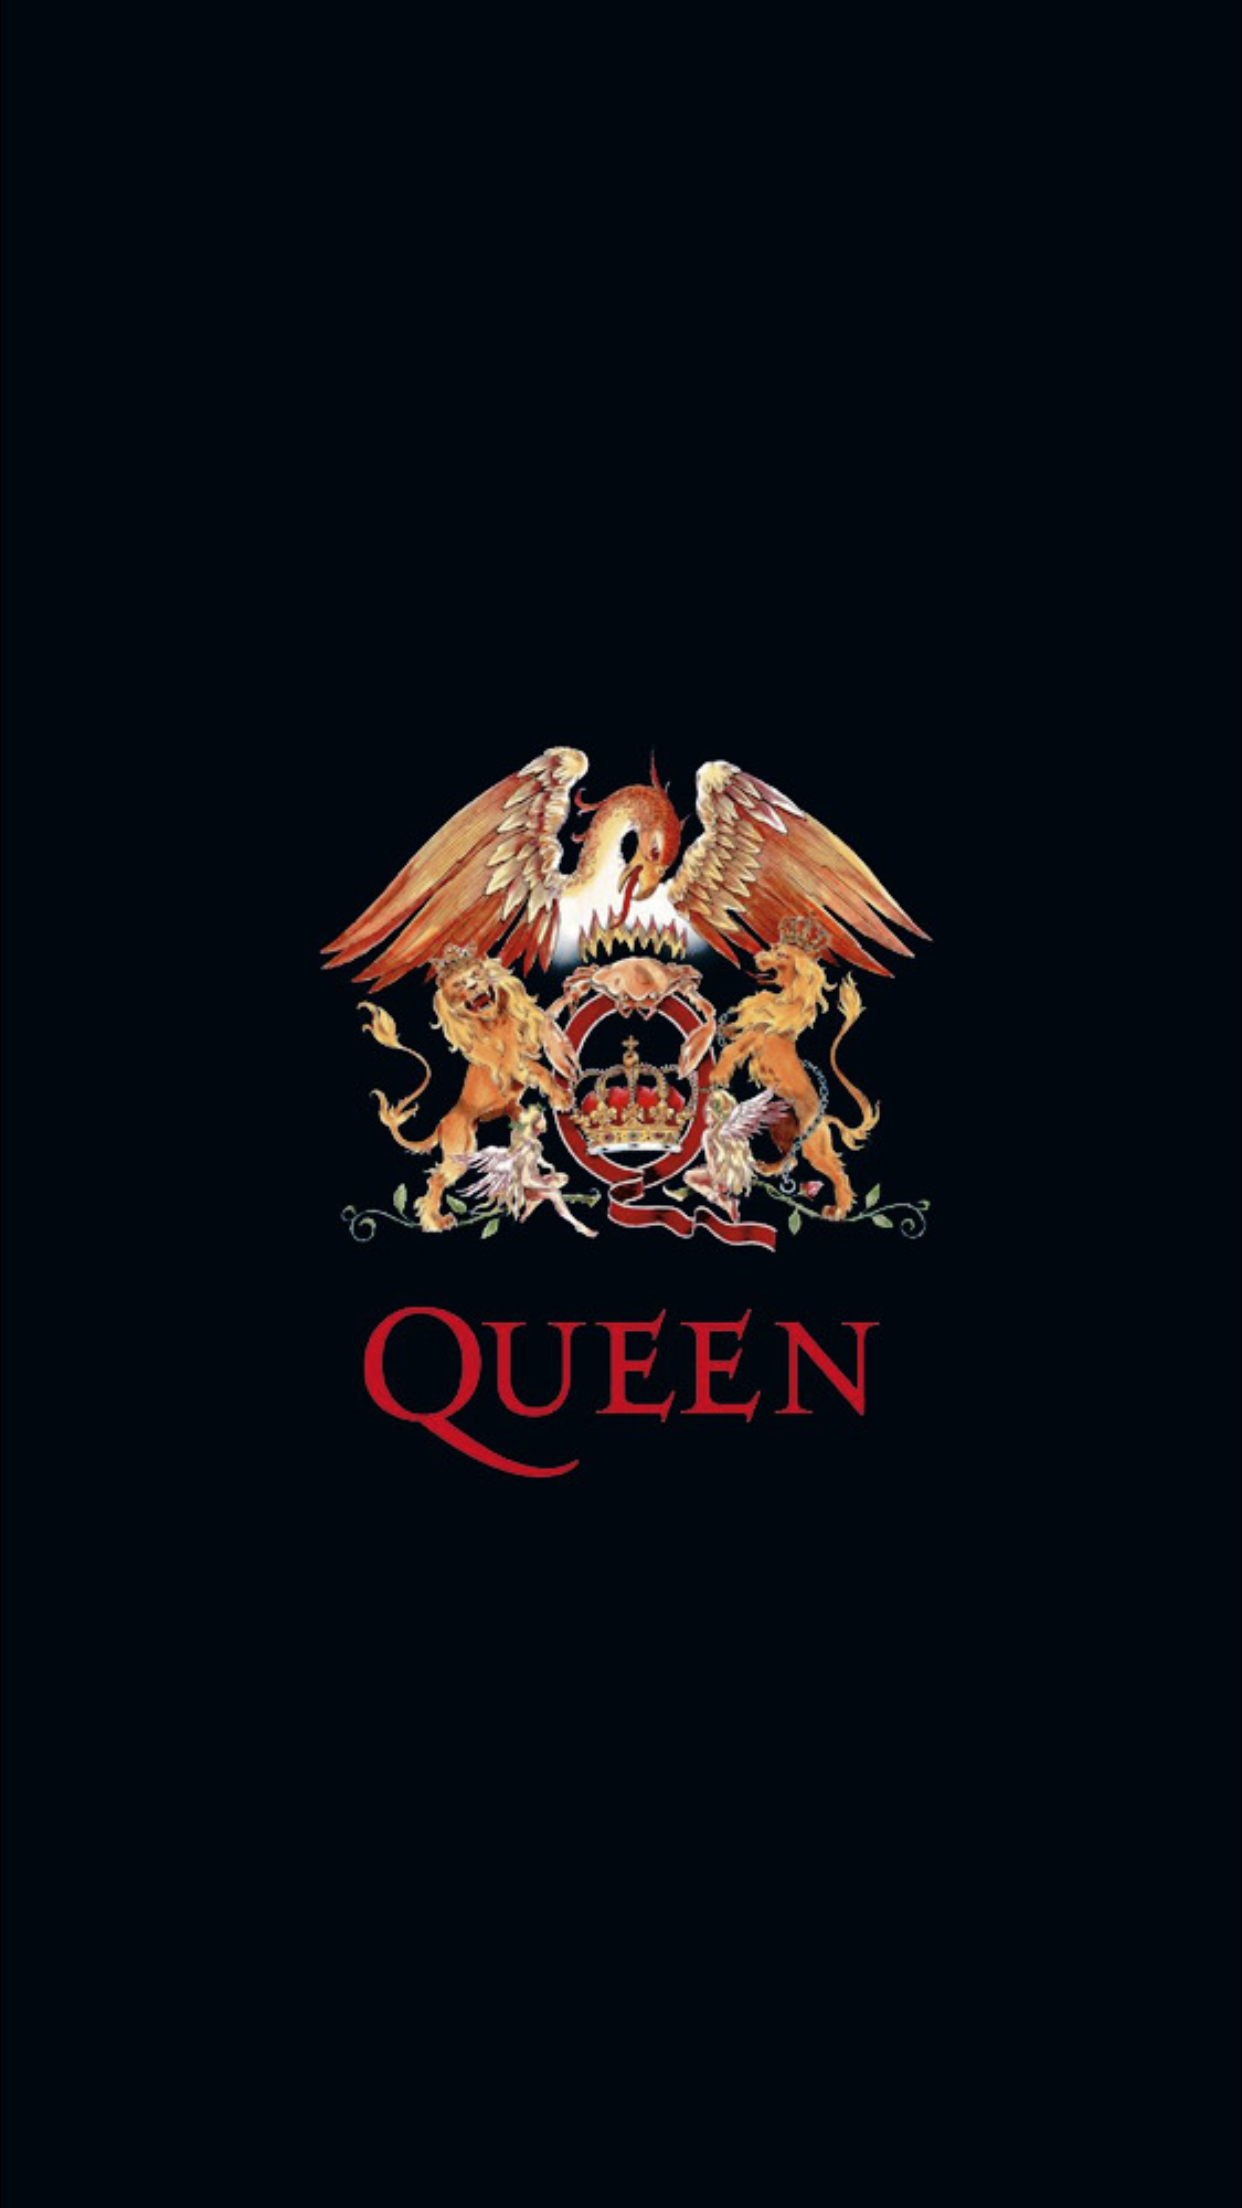 Free download wallpaper Queens wallpaper Queen band Queen [1242x2208] for your Desktop, Mobile & Tablet. Explore Queen Background. Queen Emoji Wallpaper, Snow Queen Wallpaper, Word Queen Wallpaper